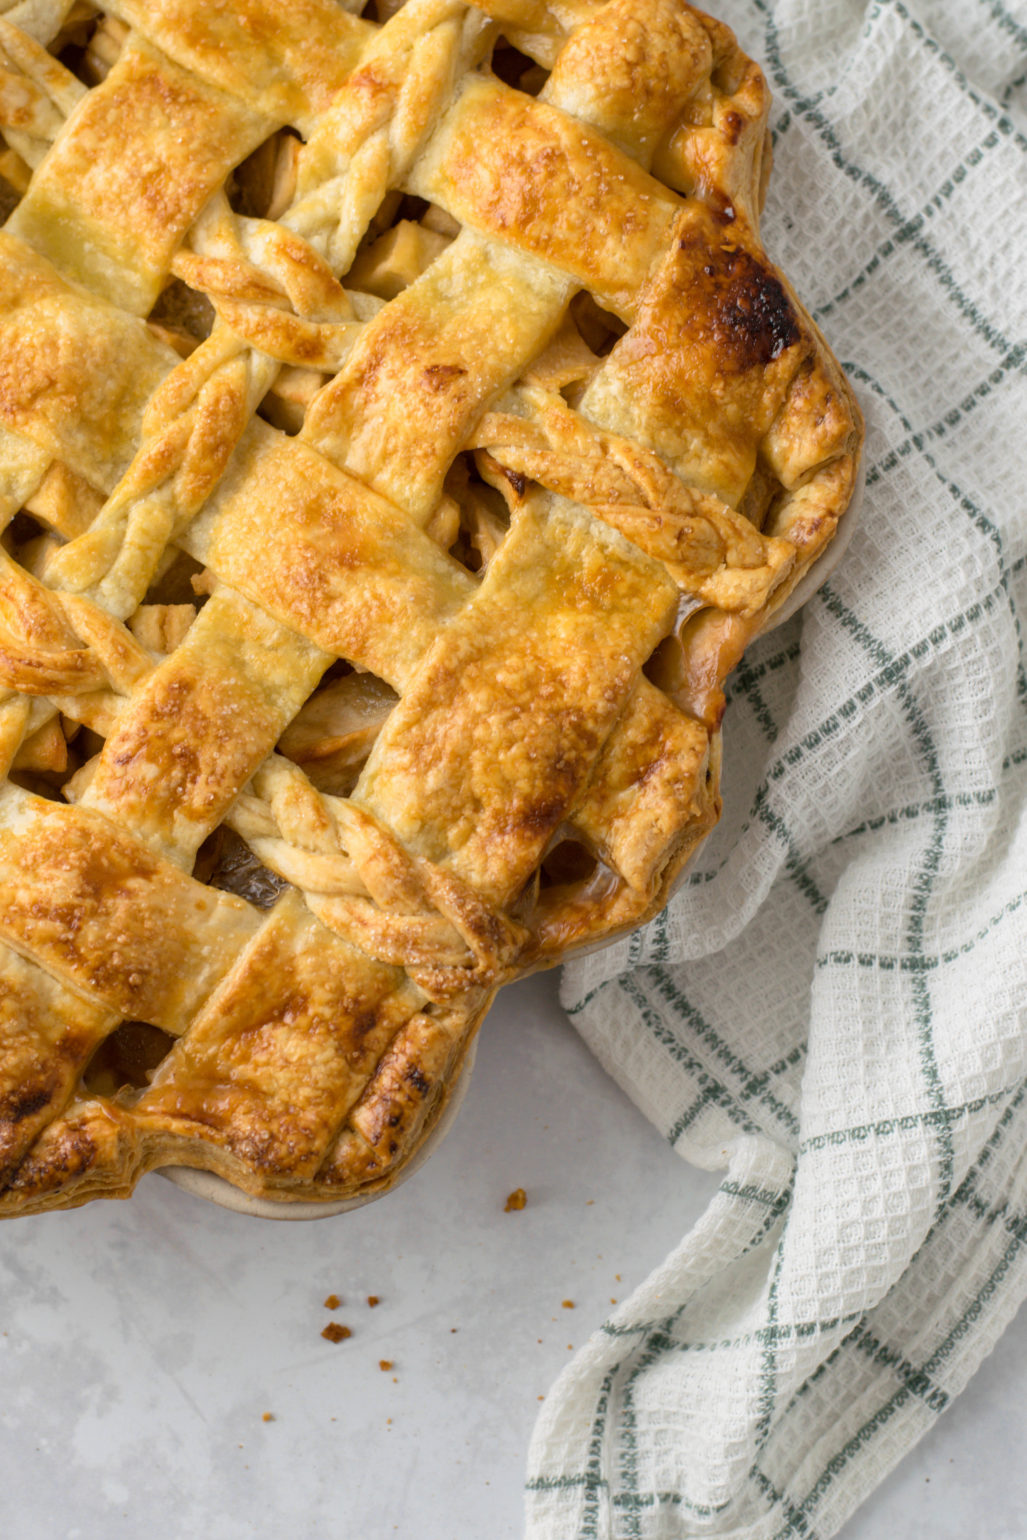 Klassischer Apple Pie Einfaches Rezept zum Backen von amerikanisch klassischem Apple Pie mit Ahornsirup. Saisonaler gedeckter Apfelkuchen mit schön dekoriertem Teig Gitter. #Applepie #Pie #Piecrust #Rezept #deutsch